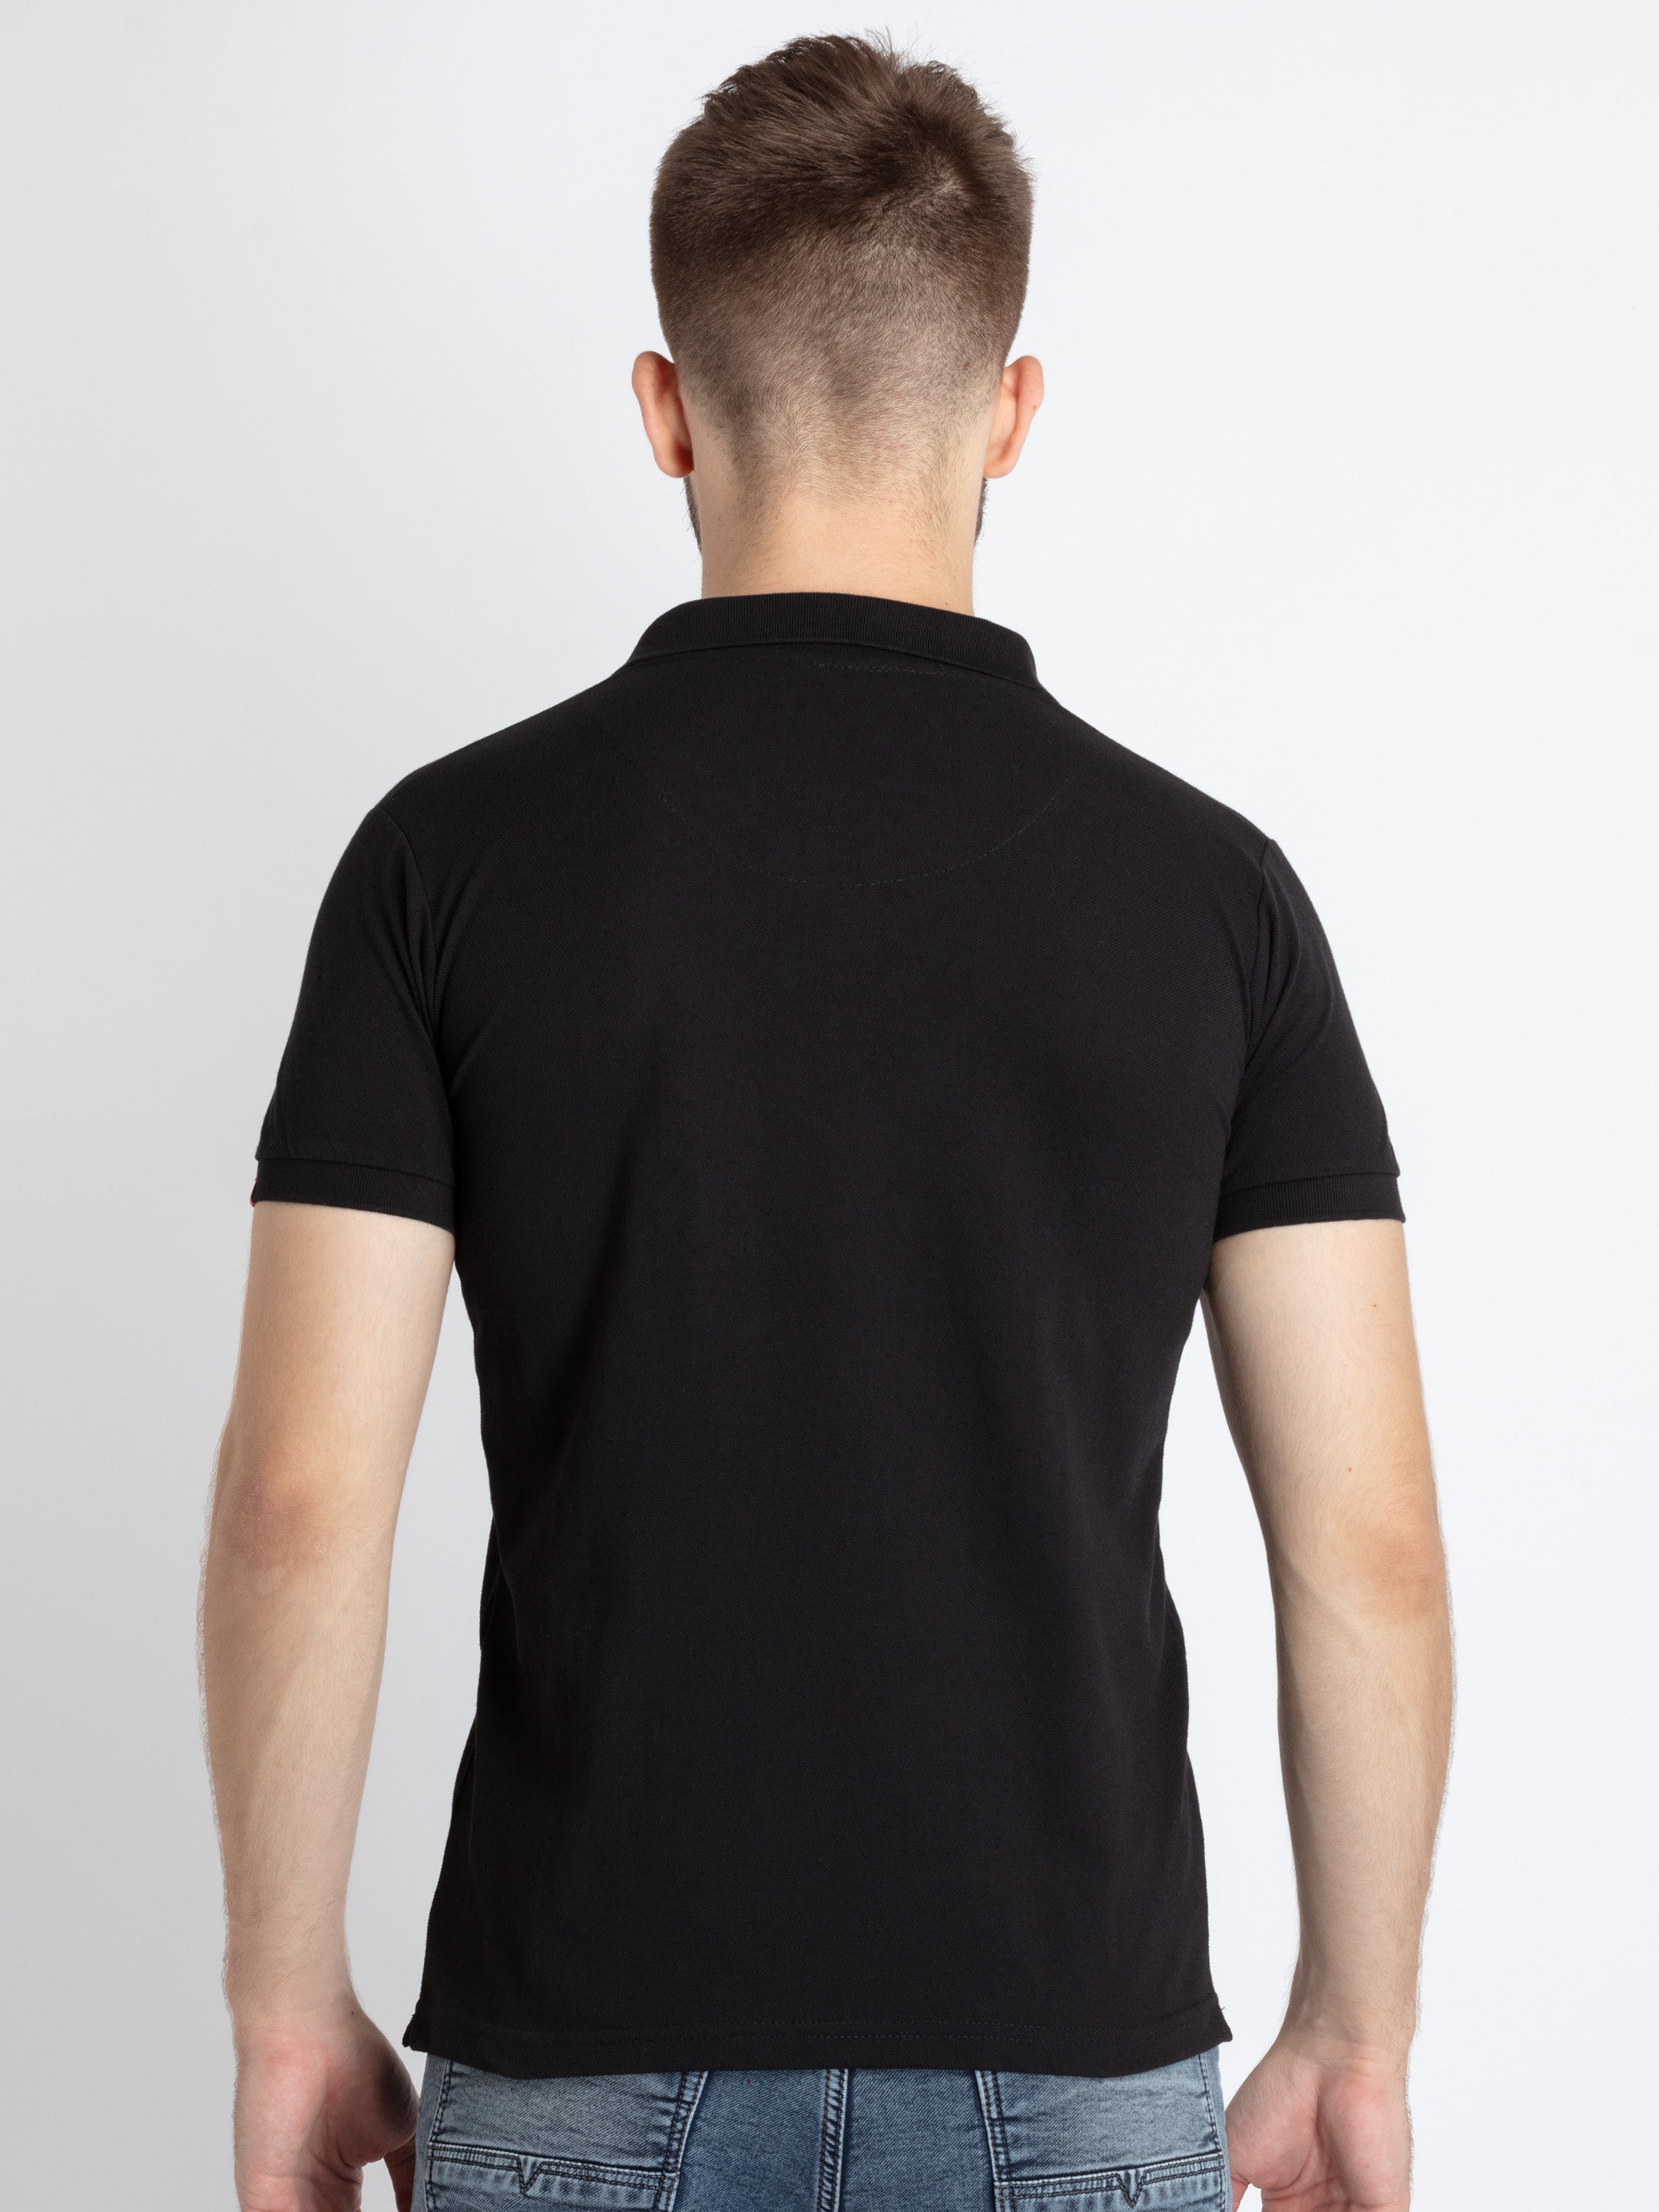 Black T-Shirt Combo | Pack of 3 - Krazy Kameez